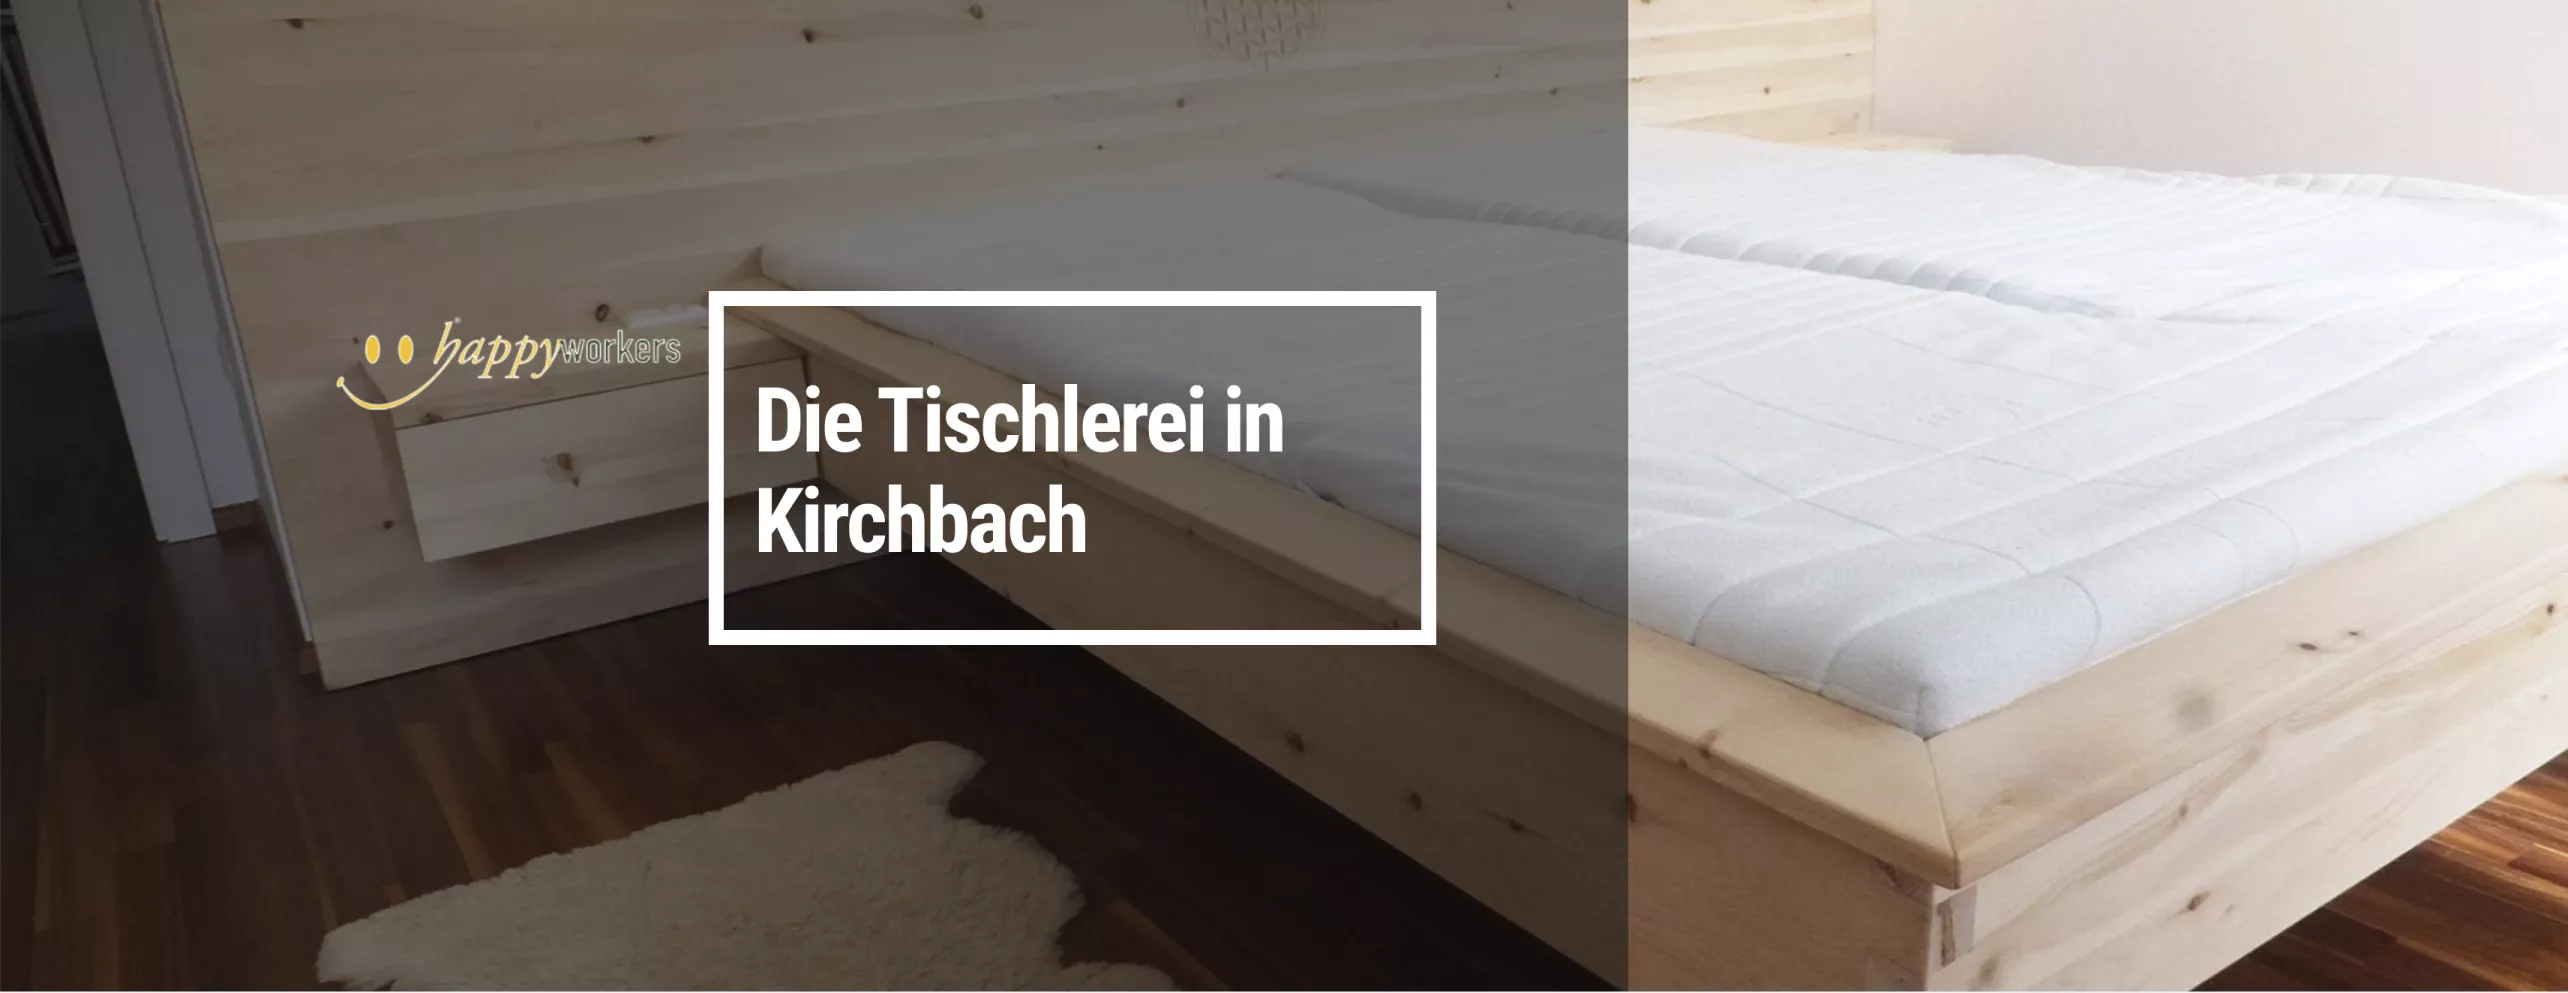 Happyworkers - Tischlerei in Kirchbach